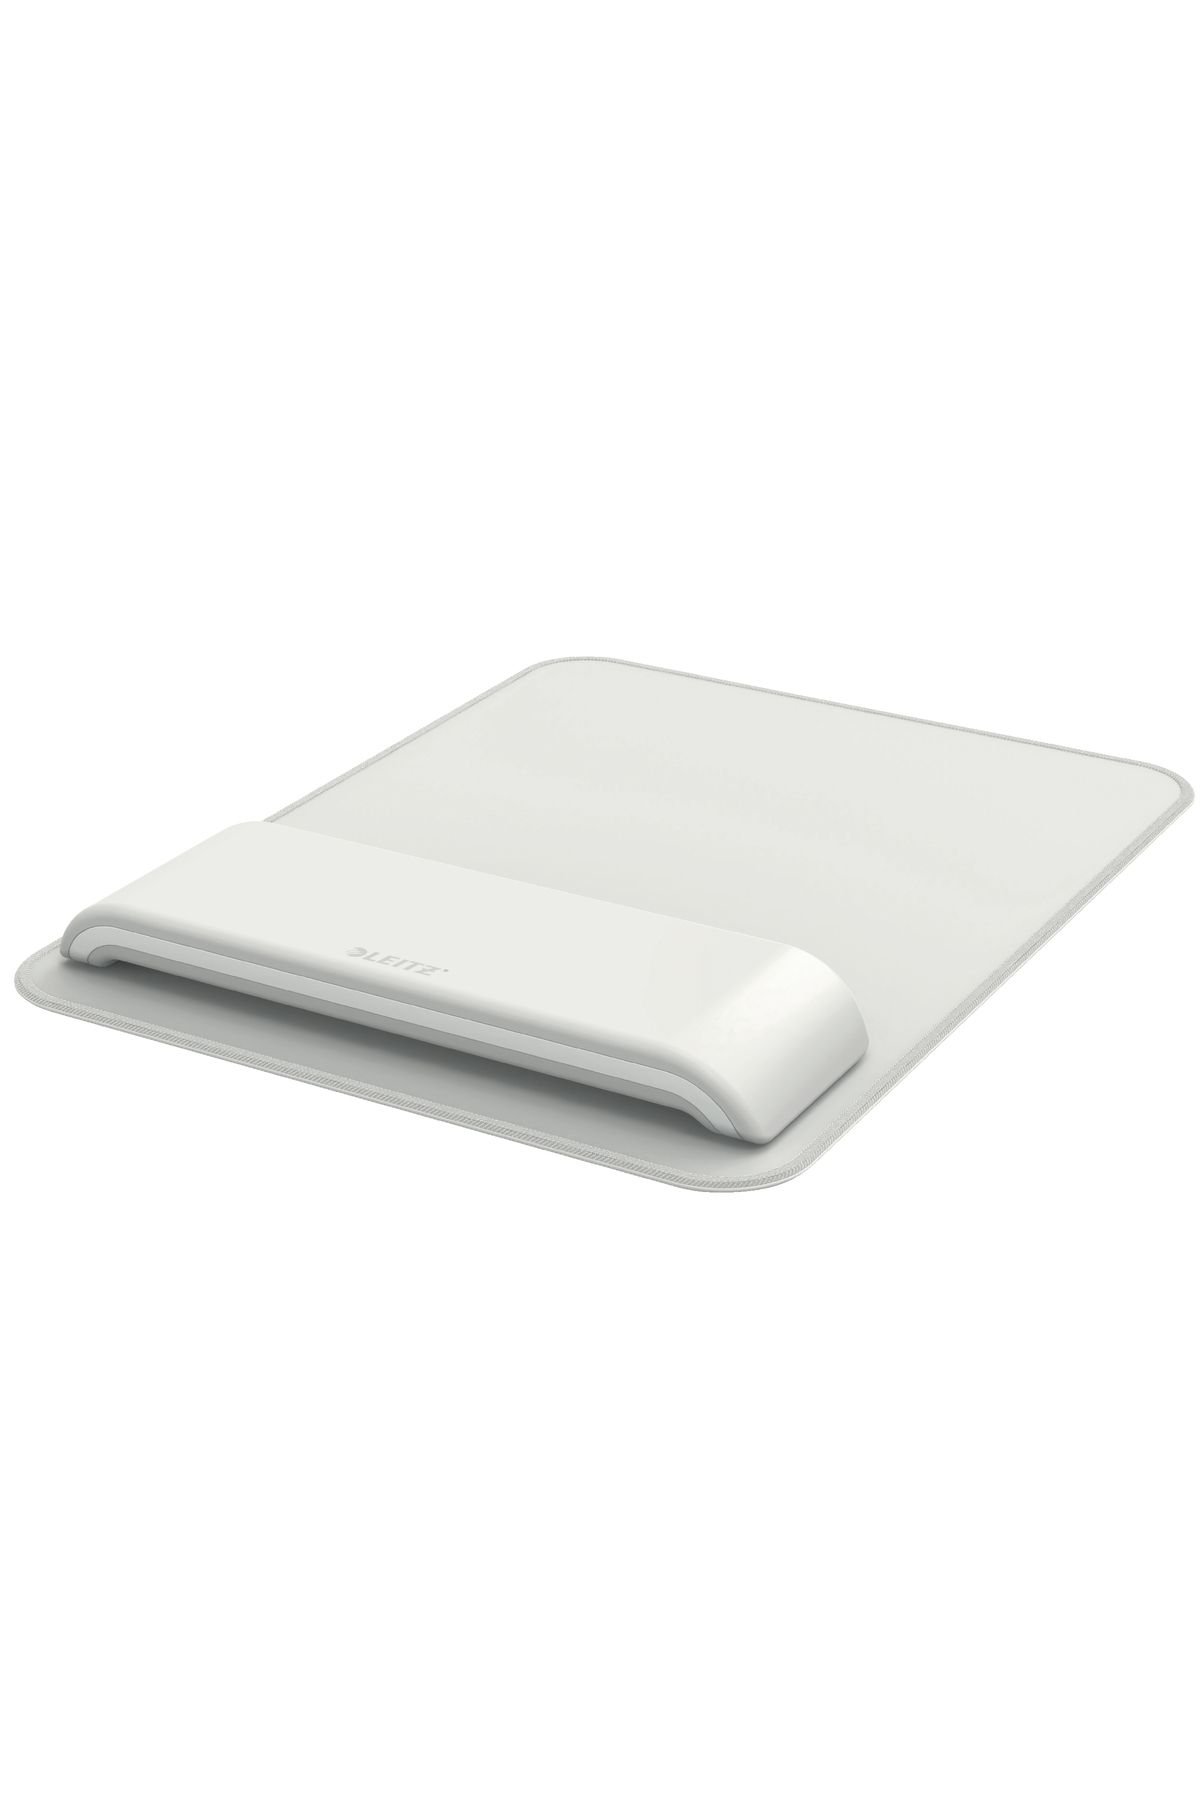 Leitz 6517 Ergo Ayarlanabilir Bilek Destekli Mouse Pad, Gri